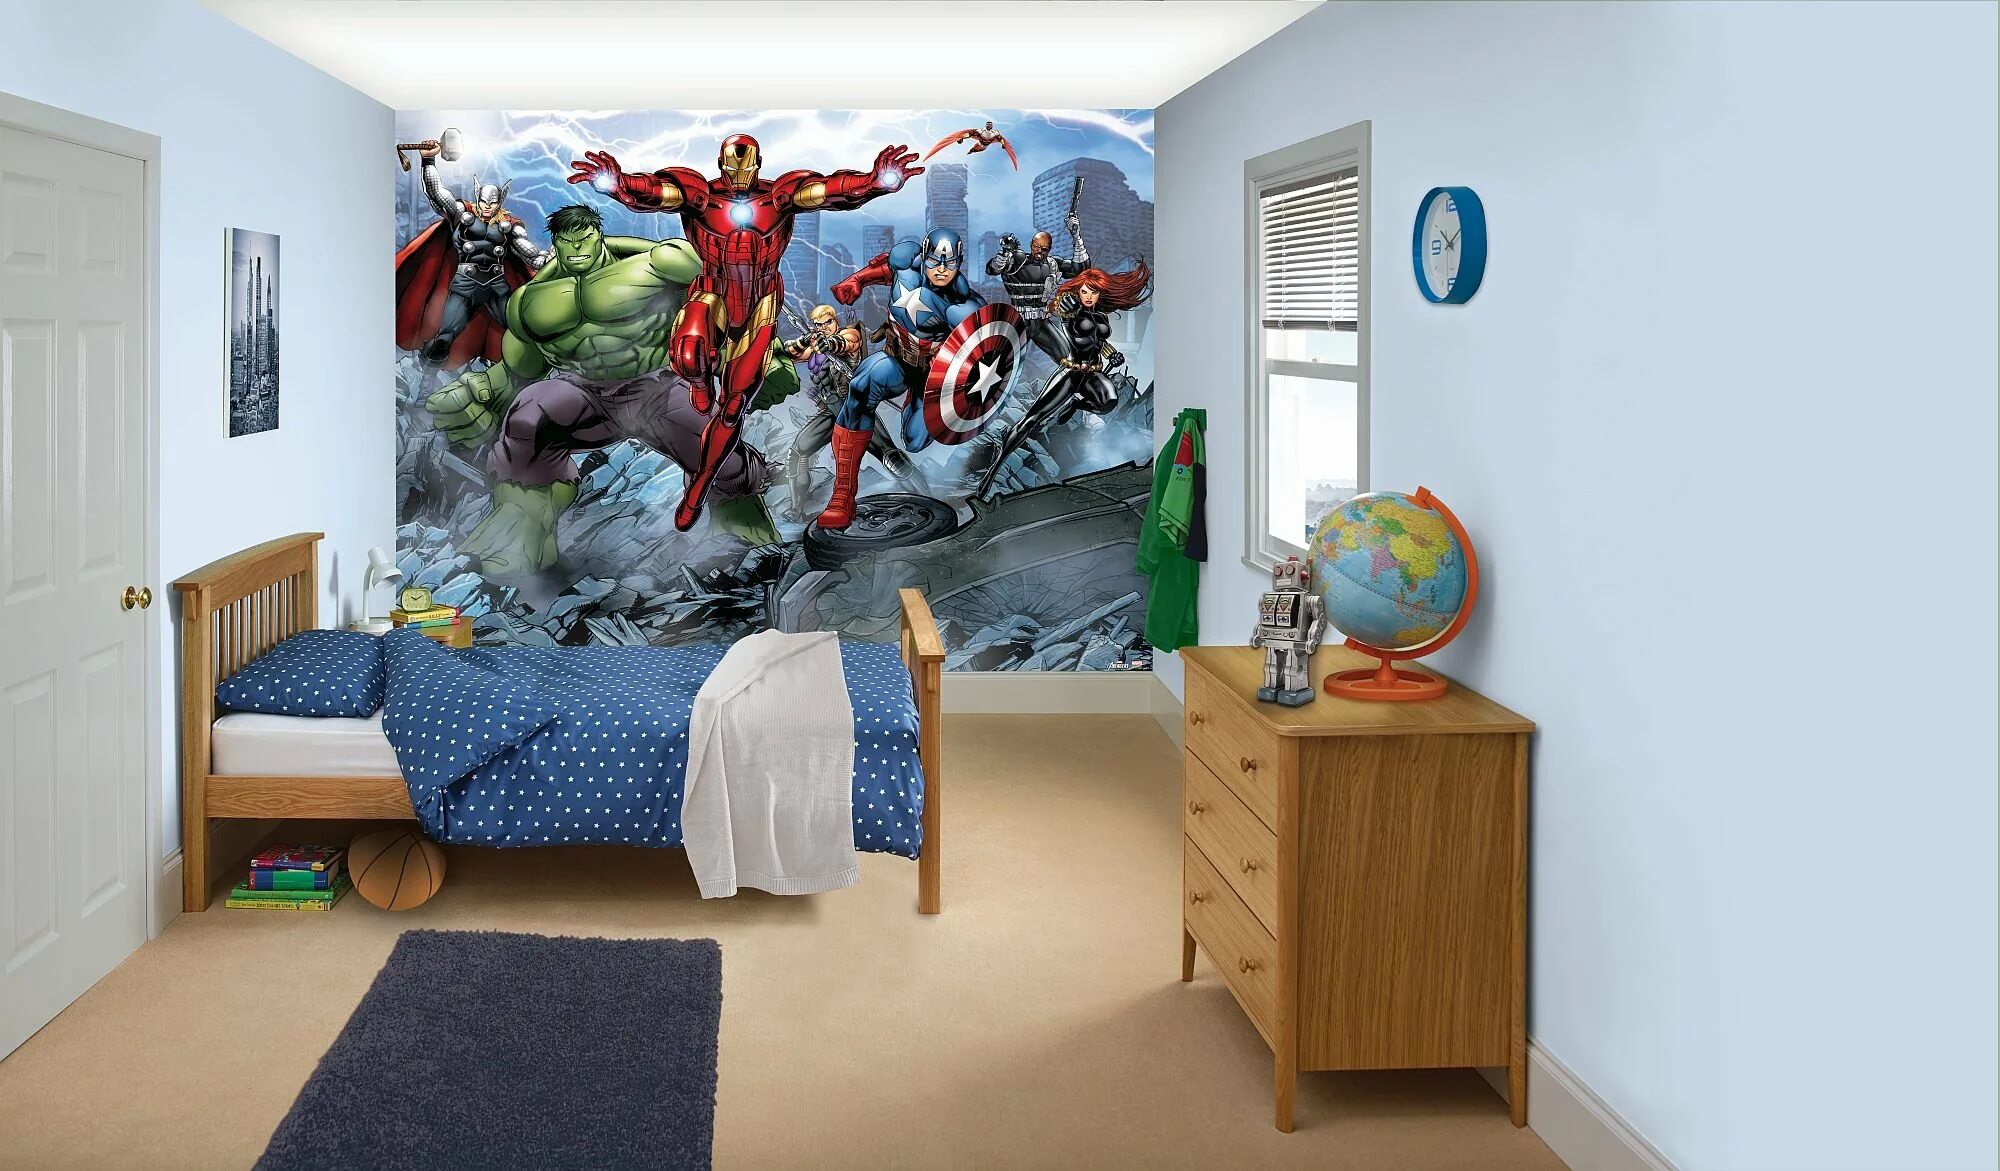 Детская комната Мстители. Комната в стиле Марвел для мальчика. Интерьер детской в стиле Мстителей. Детская комната Марвел.